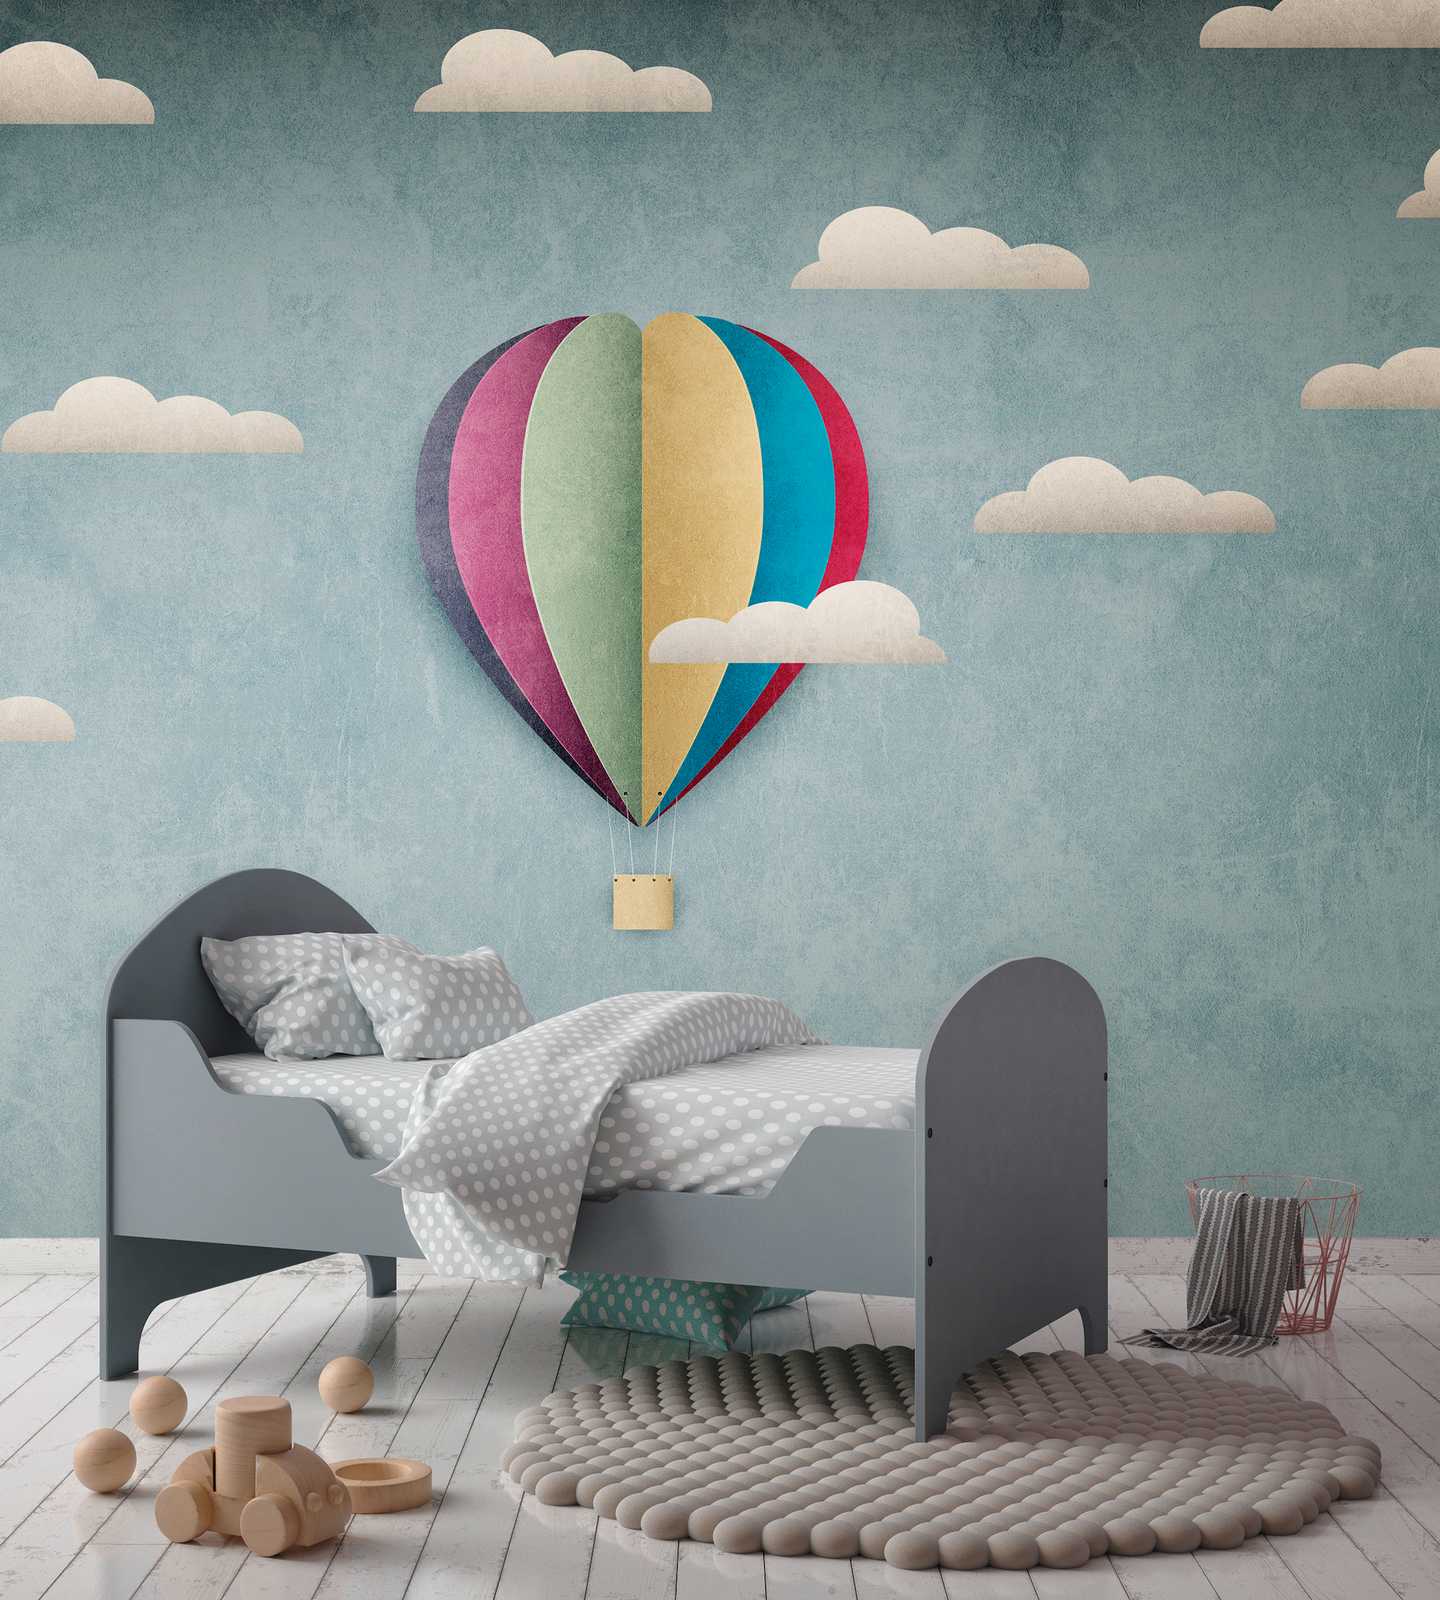             Nouveauté papier peint | papier peint à motifs montgolfière & ciel nuageux pour enfants
        